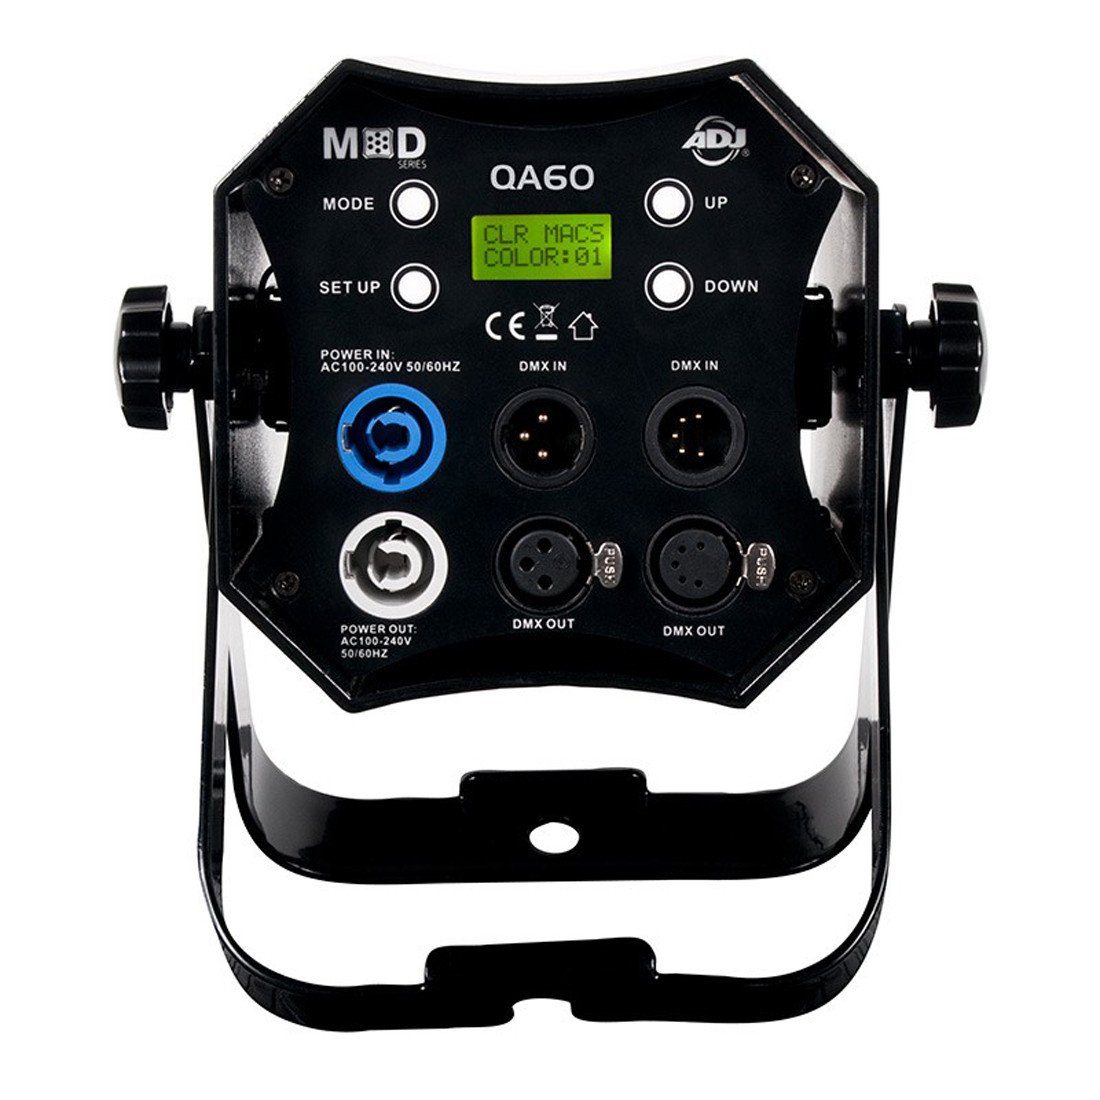 ADJ MOD QA60 LED Par Can - DY Pro Audio